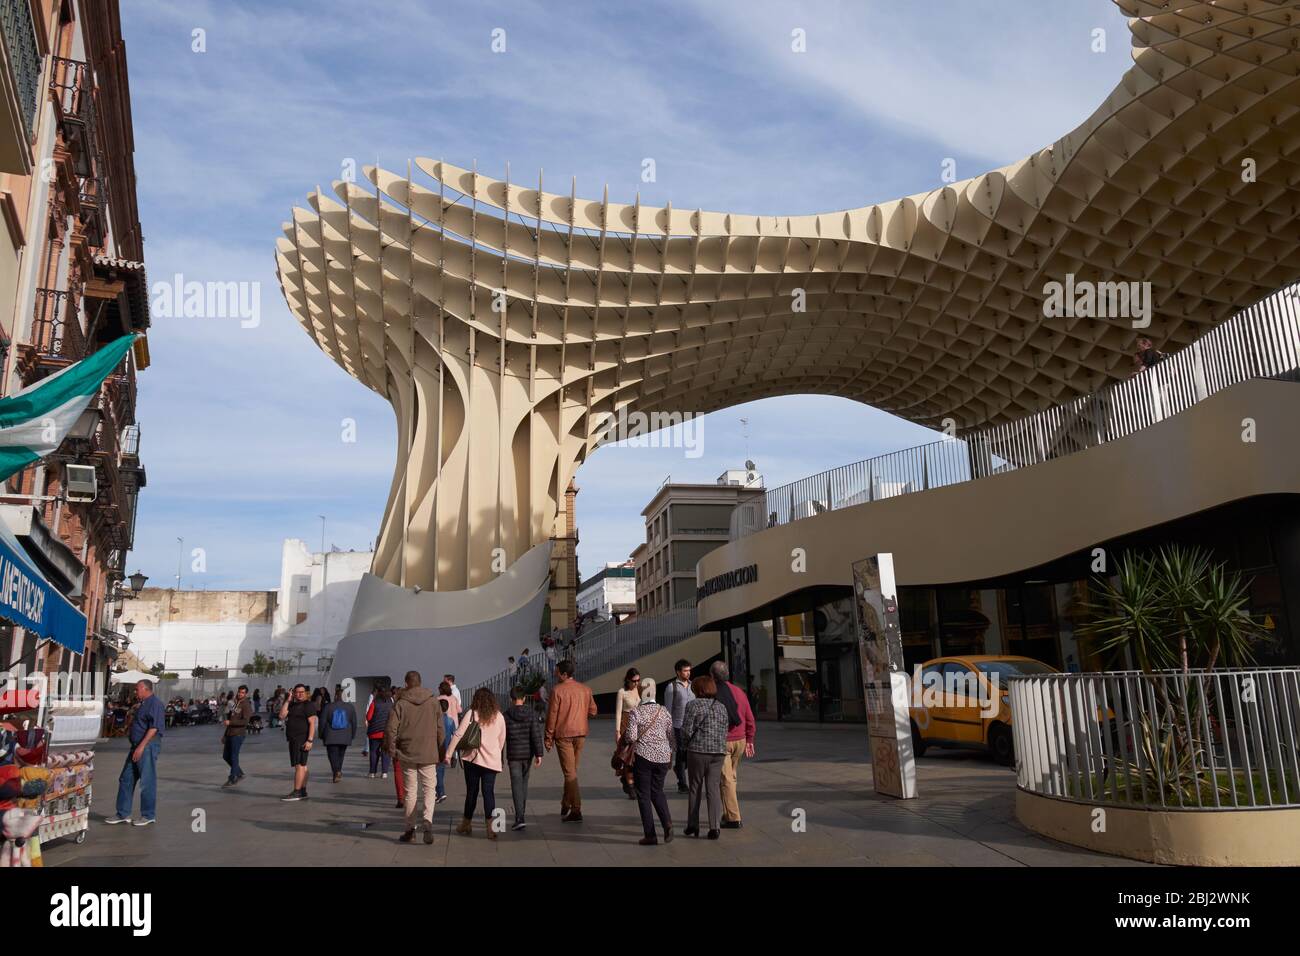 The Metropol Parasol, Plaza de la Encarnación, Seville, Spain. Stock Photo